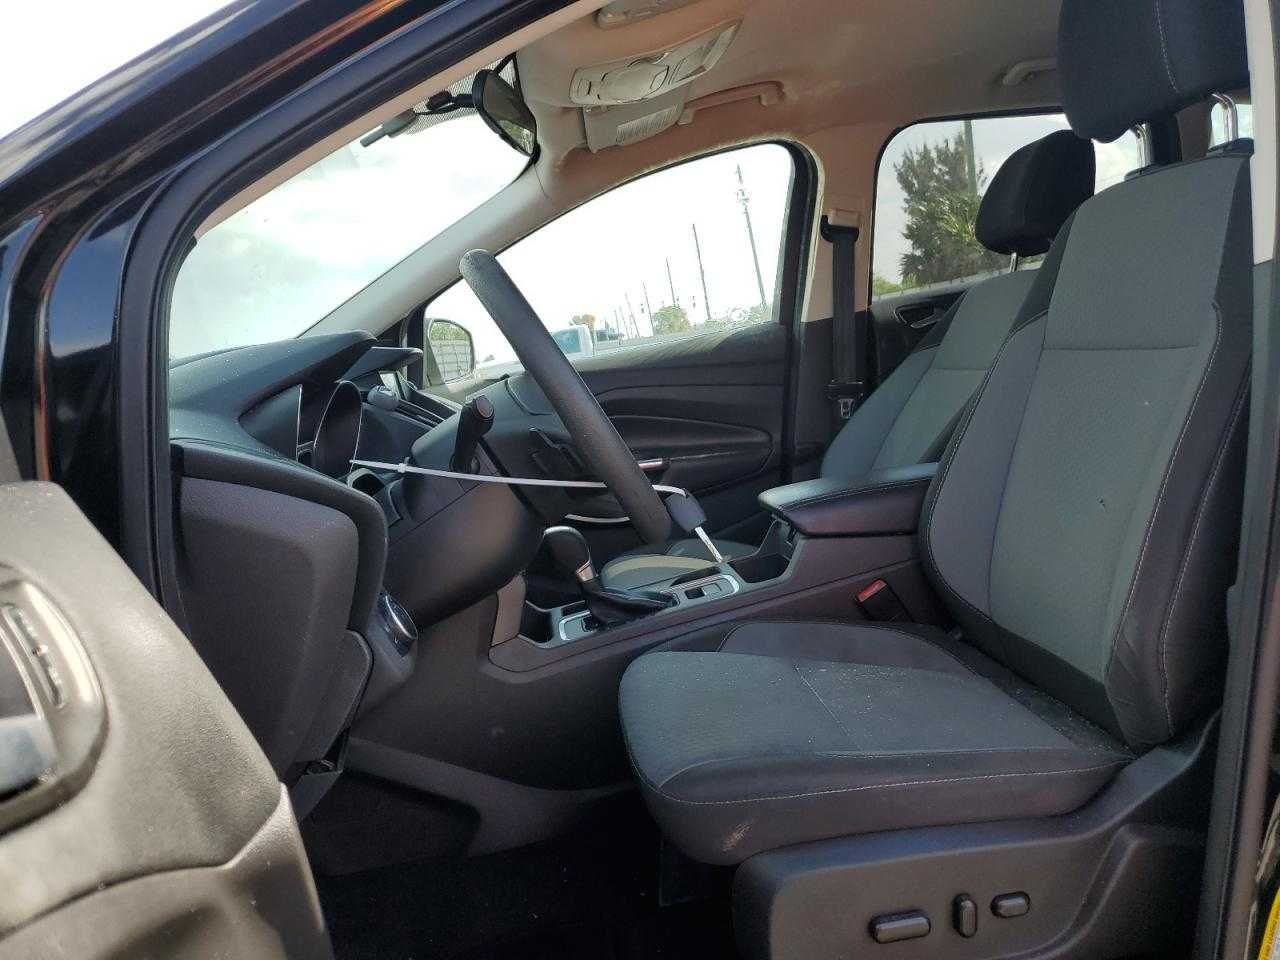 Ford Escape SE 2017